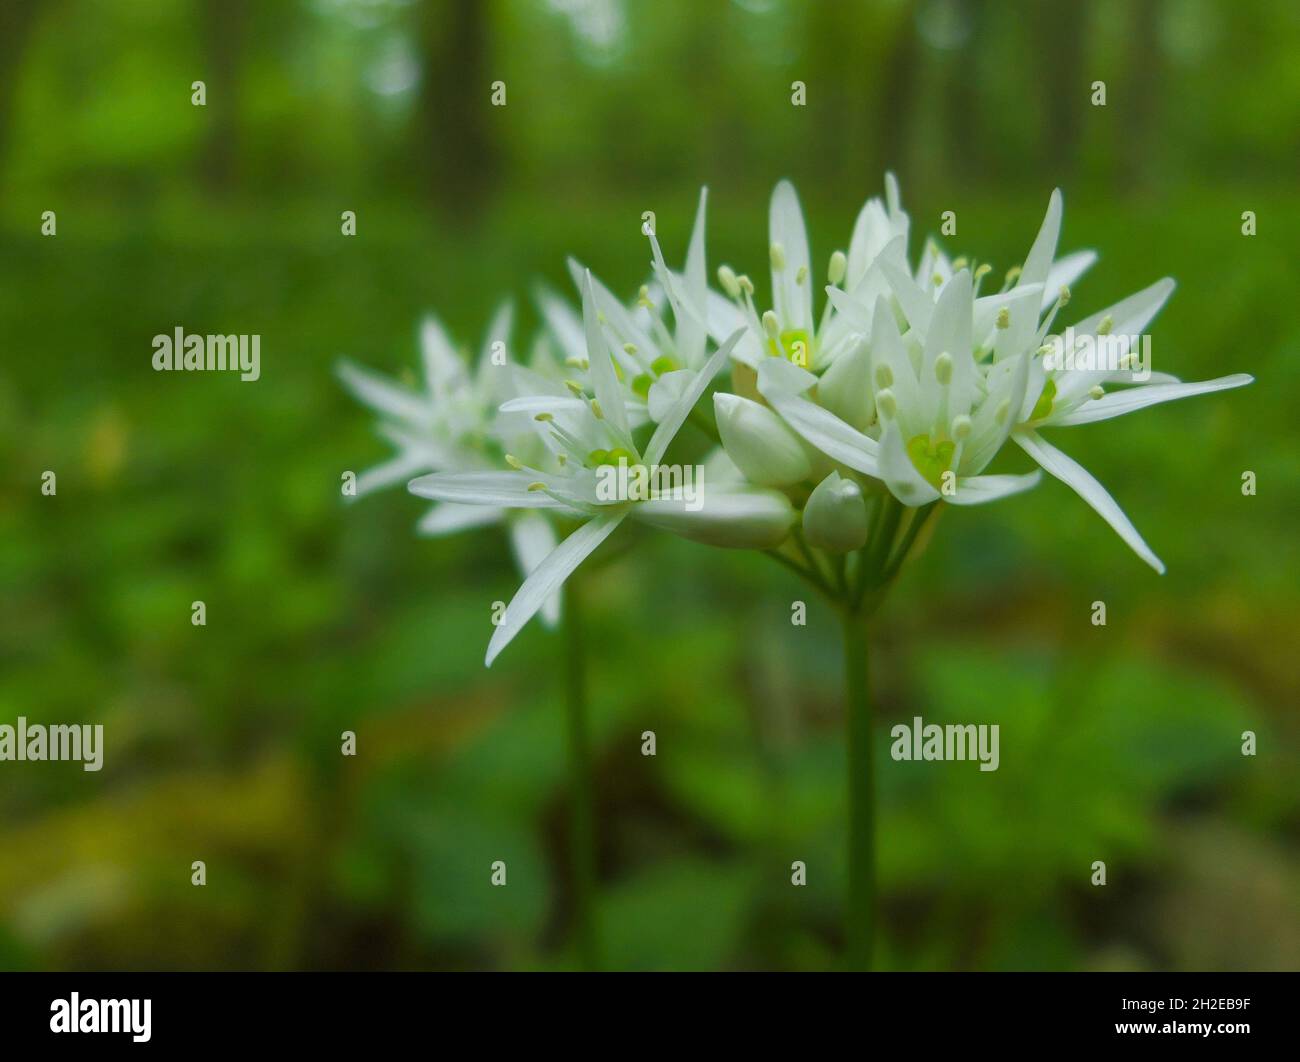 Aglio selvatico (Allium ursinum) fiorito nella foresta di primavera - primo piano dei suoi fiori bianchi Foto Stock